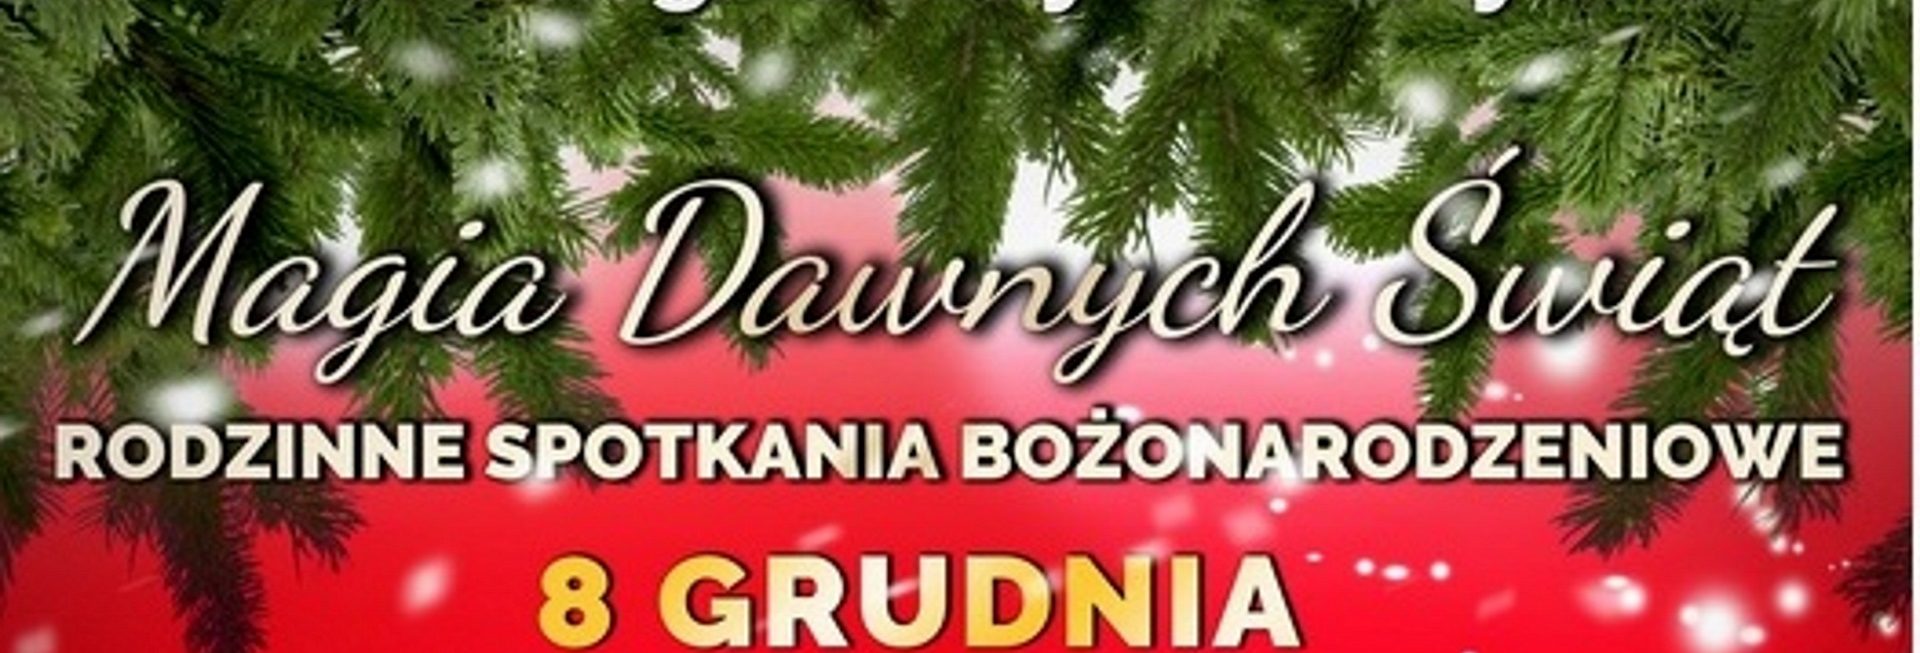 Plakat graficzny zapraszający na Rodzinne Spotkania Bożonarodzeniowe do Skansenu w Olsztynku. Na plakacie program imprezy. Grafika świąteczna, czerwone tło plakatu z elementami choinki i śniegu. 